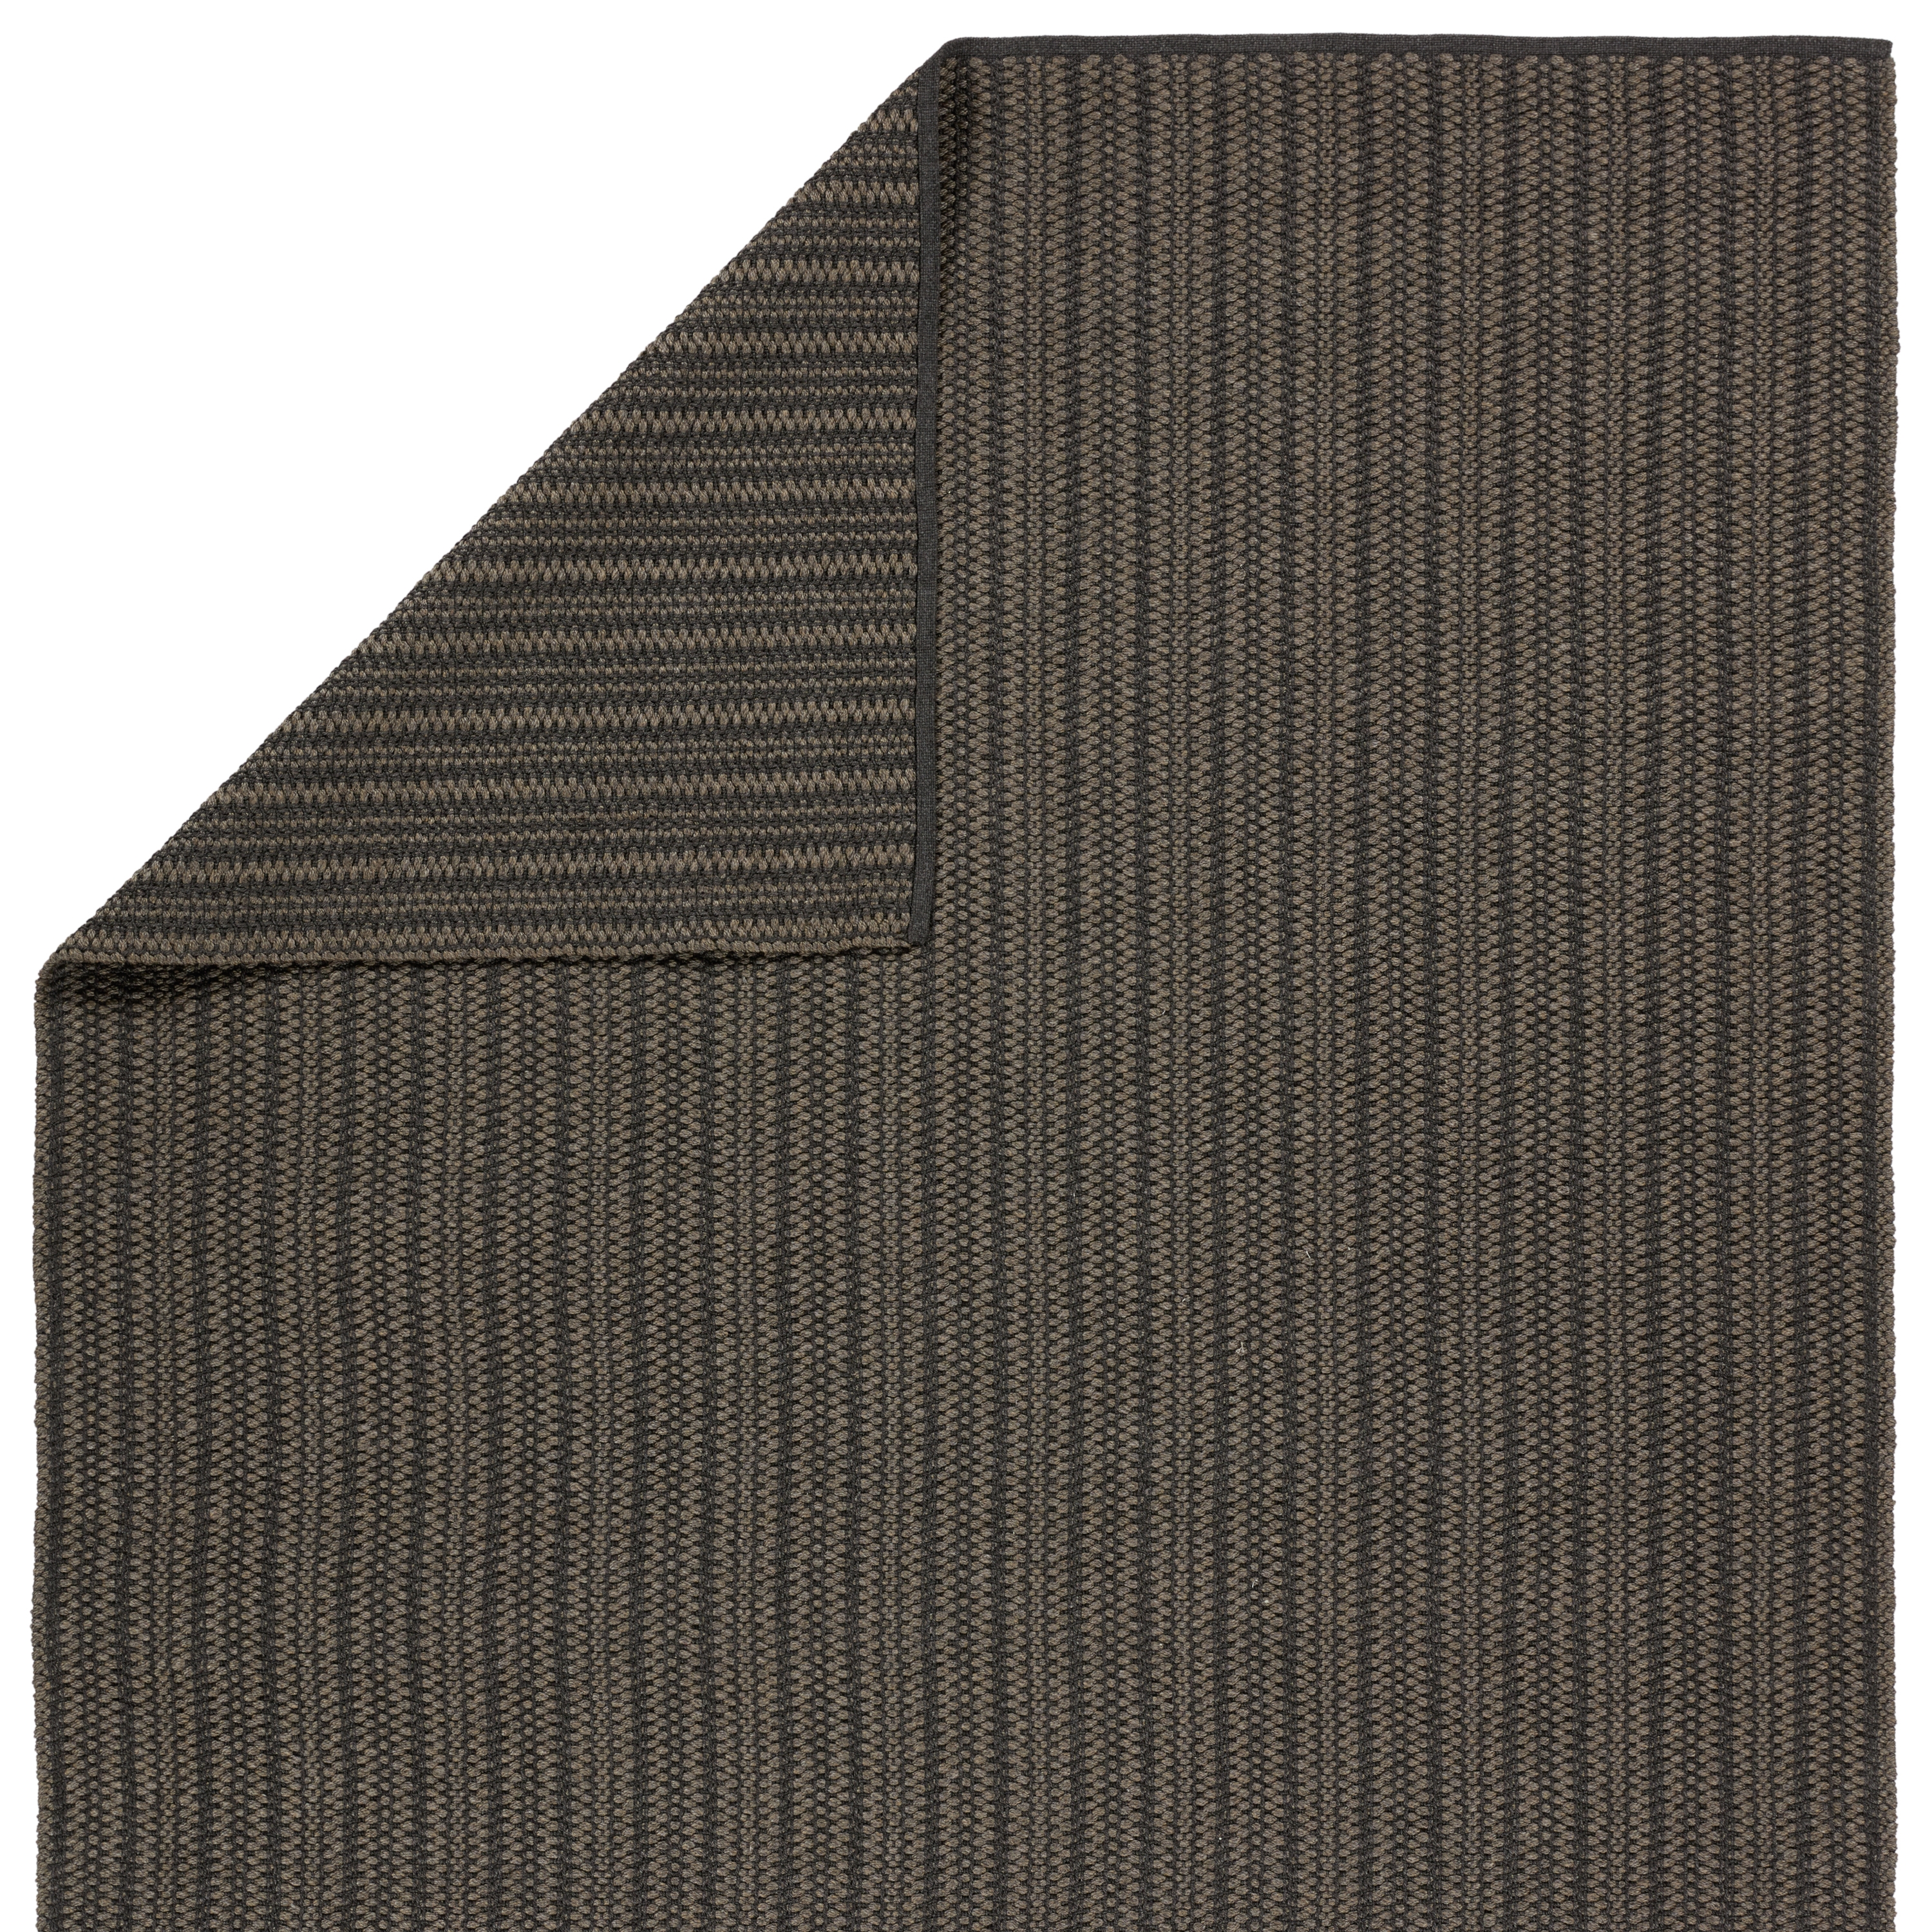 Elmas Handmade Indoor/Outdoor Striped Gray/Charcoal Area Rug (9'X12') - Image 2